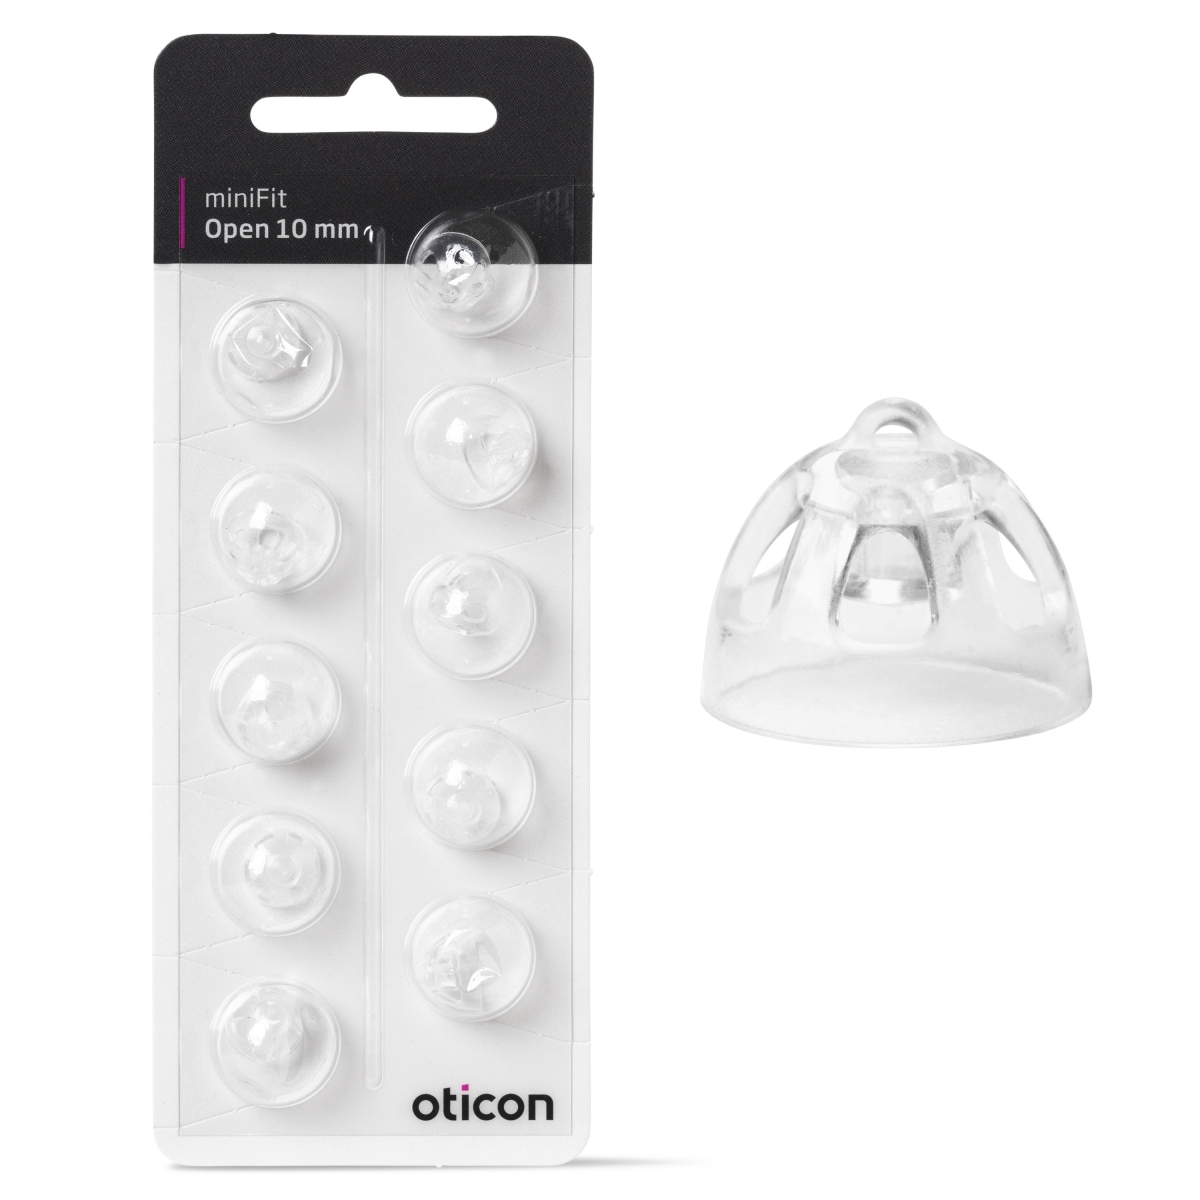 Se Oticon miniFit Open 10 mm dome hos Japebo.dk